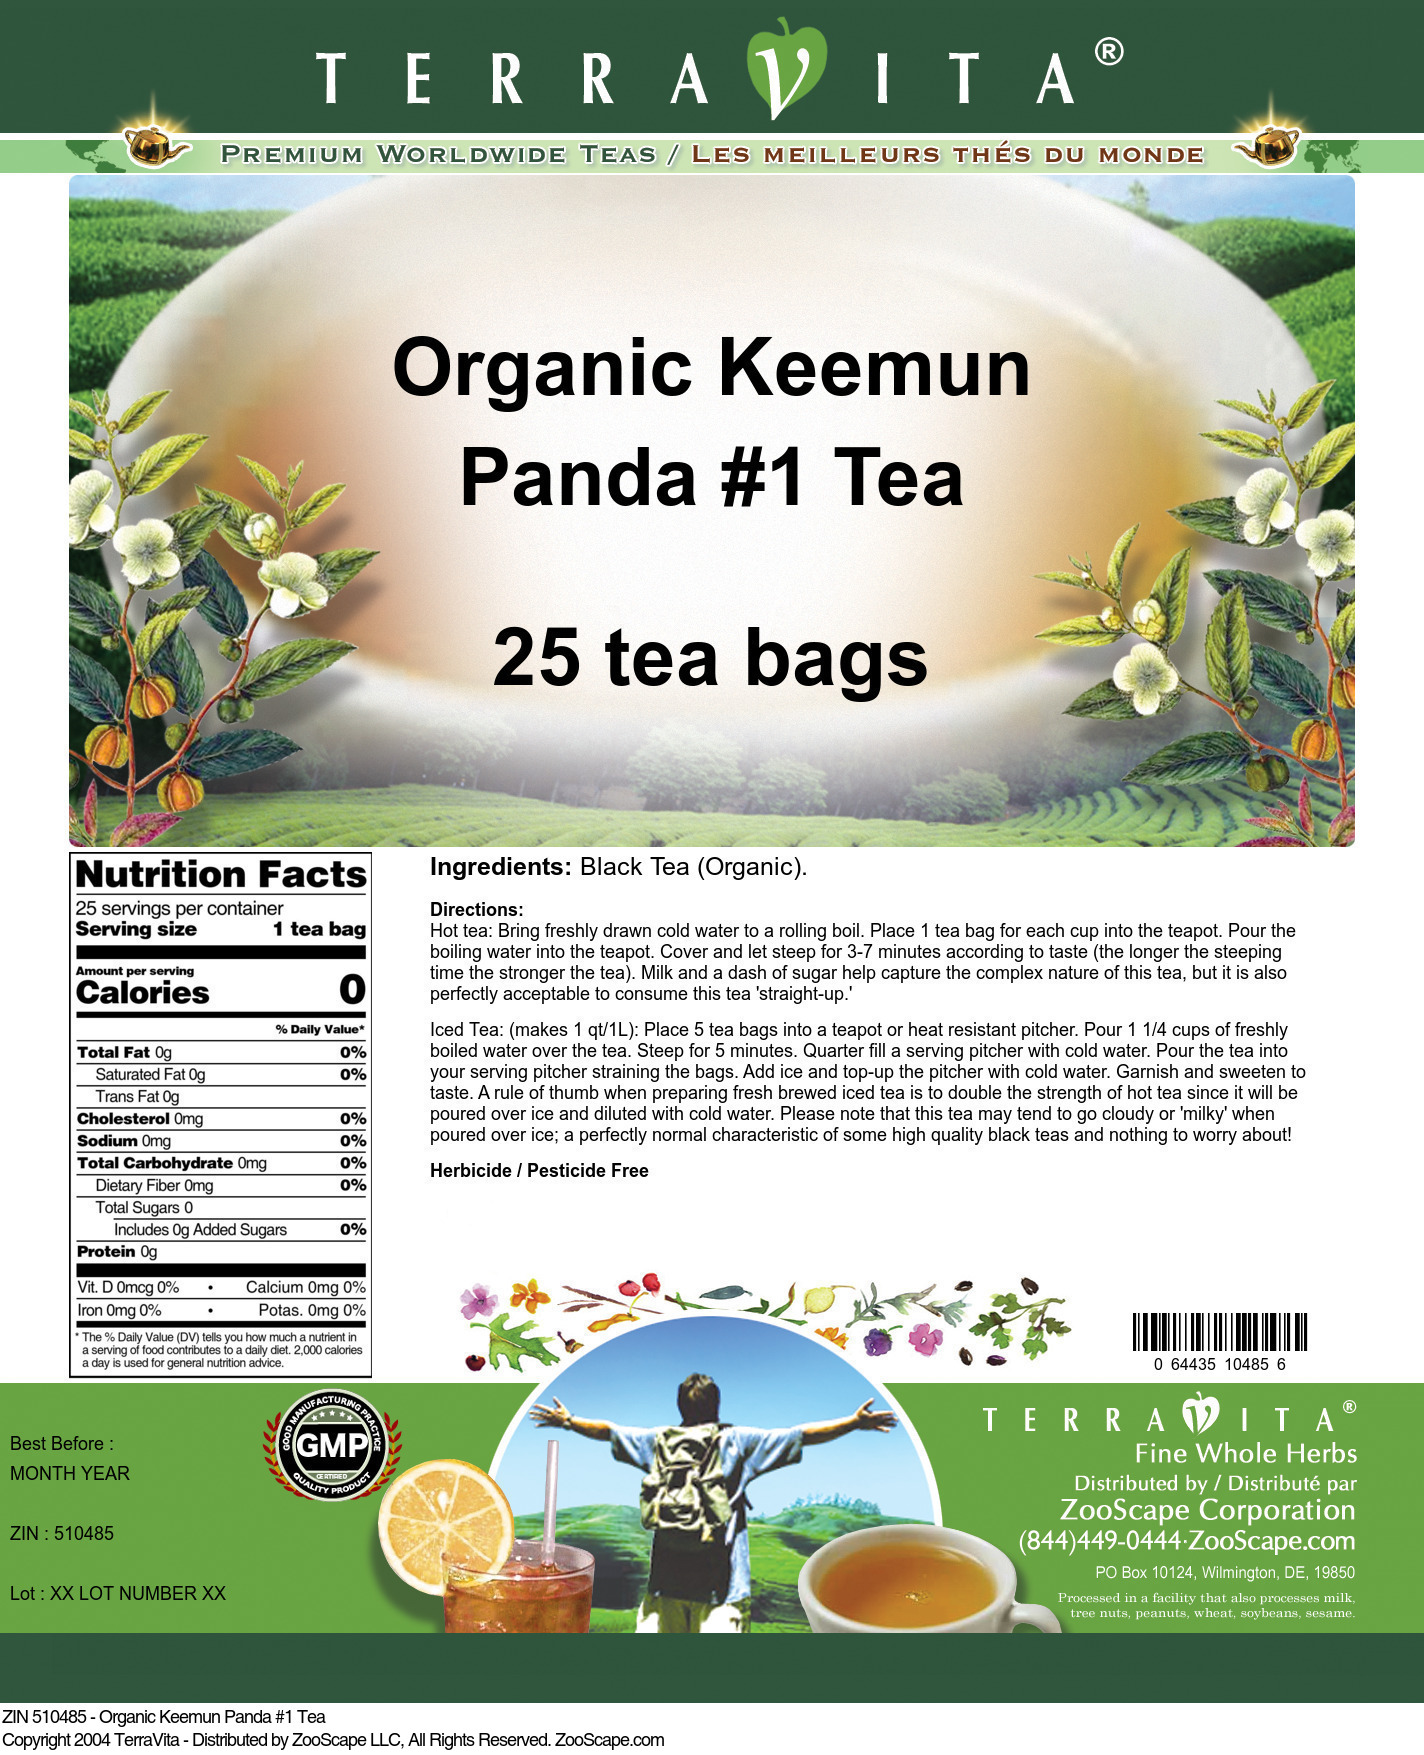 Organic Keemun Panda #1 Tea - Label